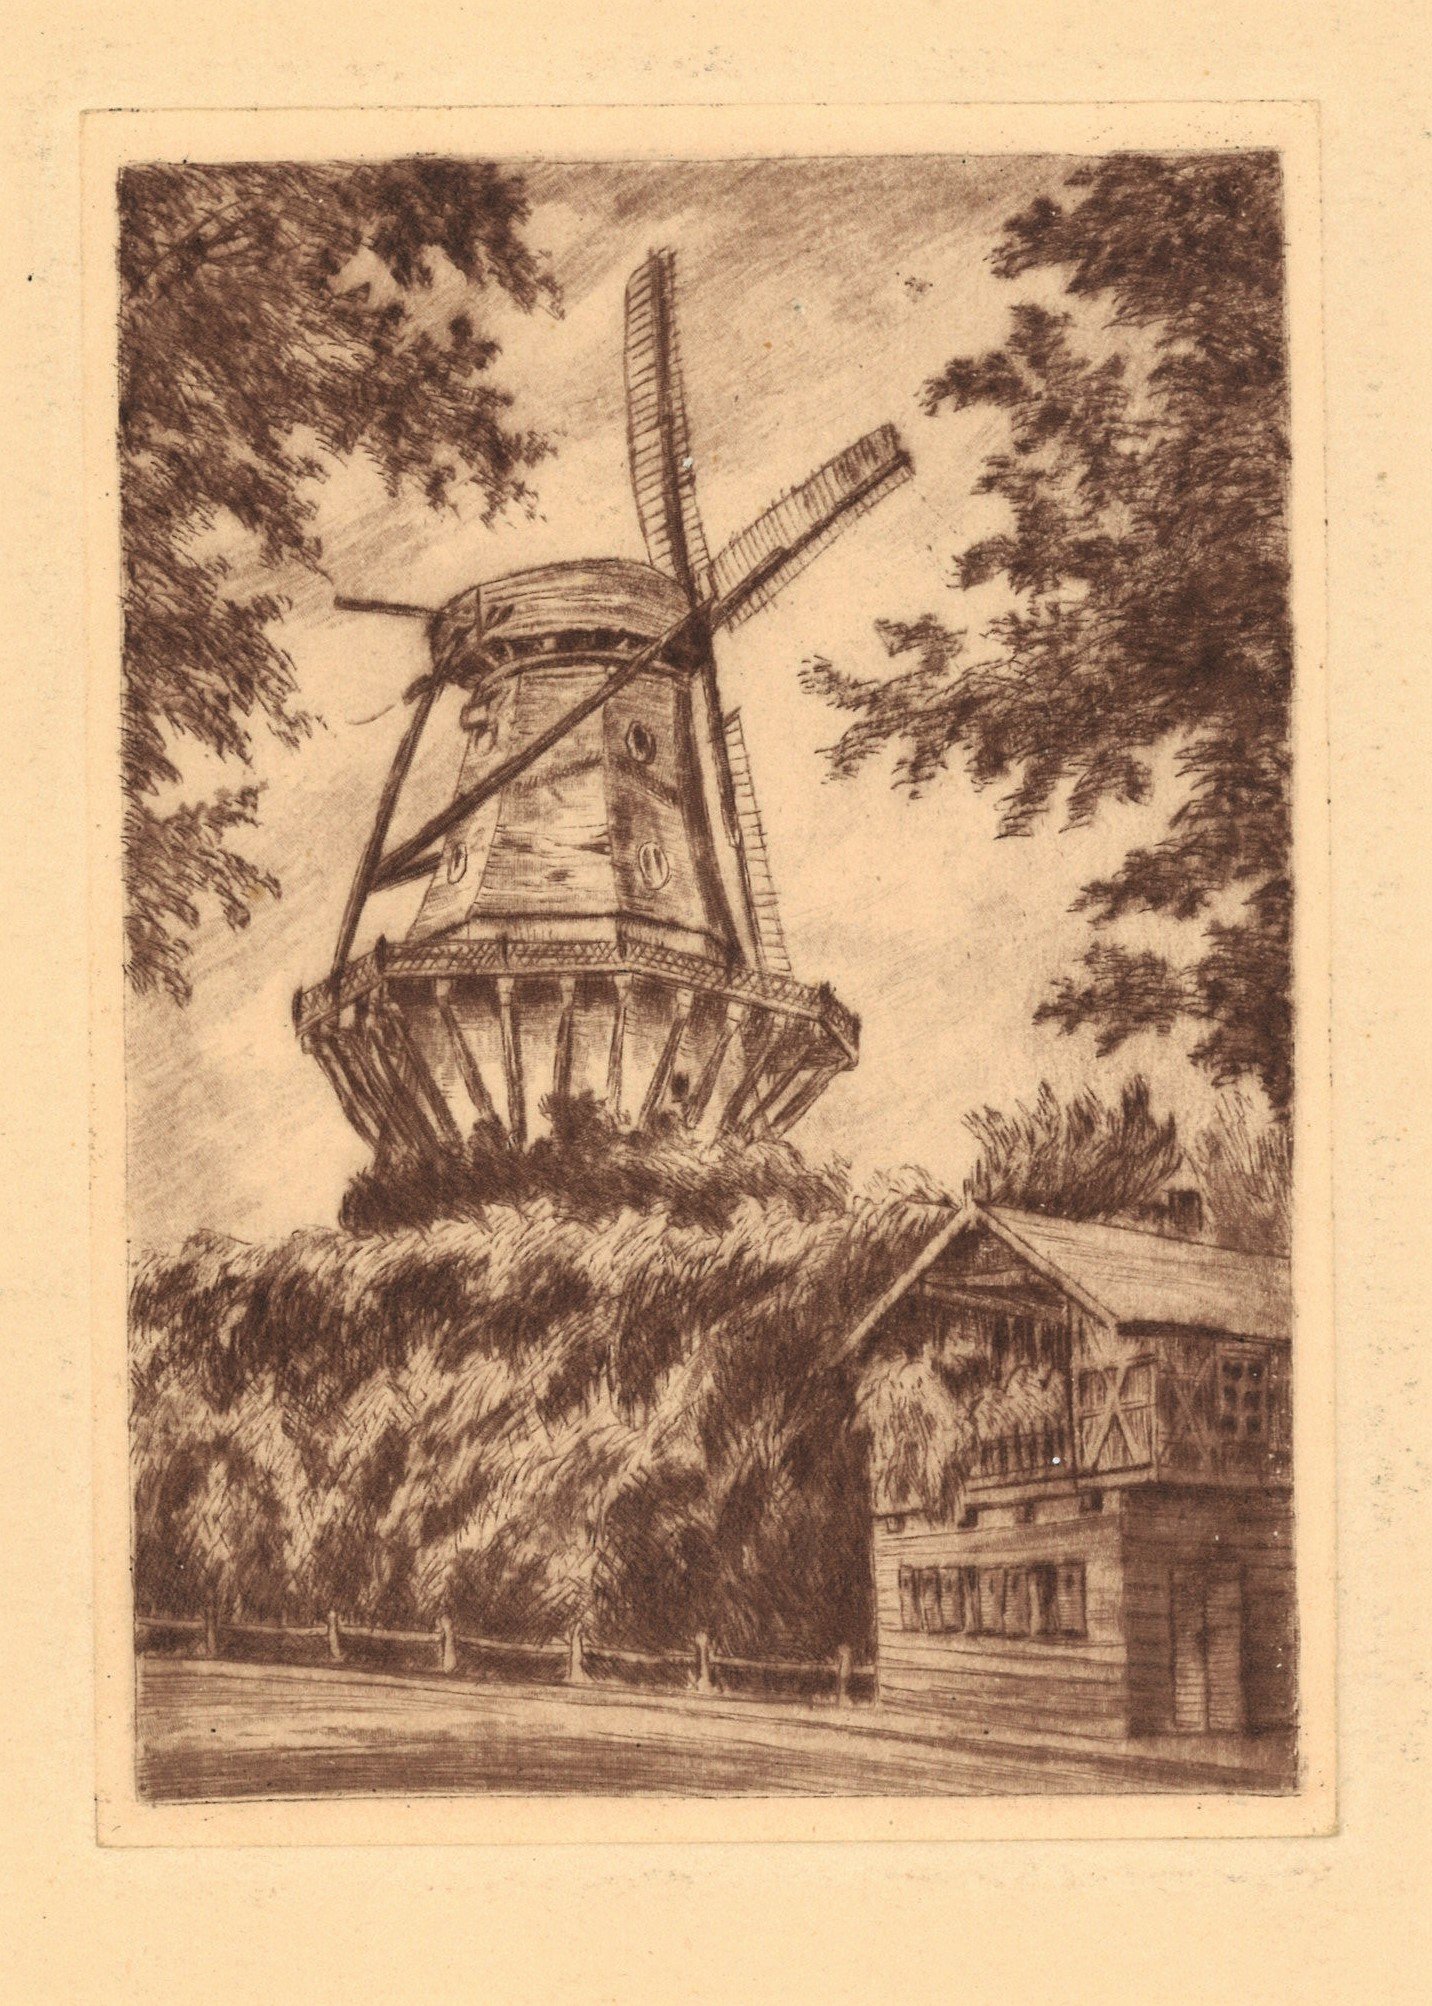 Potsdam-Sanssouci: Historische Mühle von Nordosten (Landesgeschichtliche Vereinigung für die Mark Brandenburg e.V., Archiv CC BY)